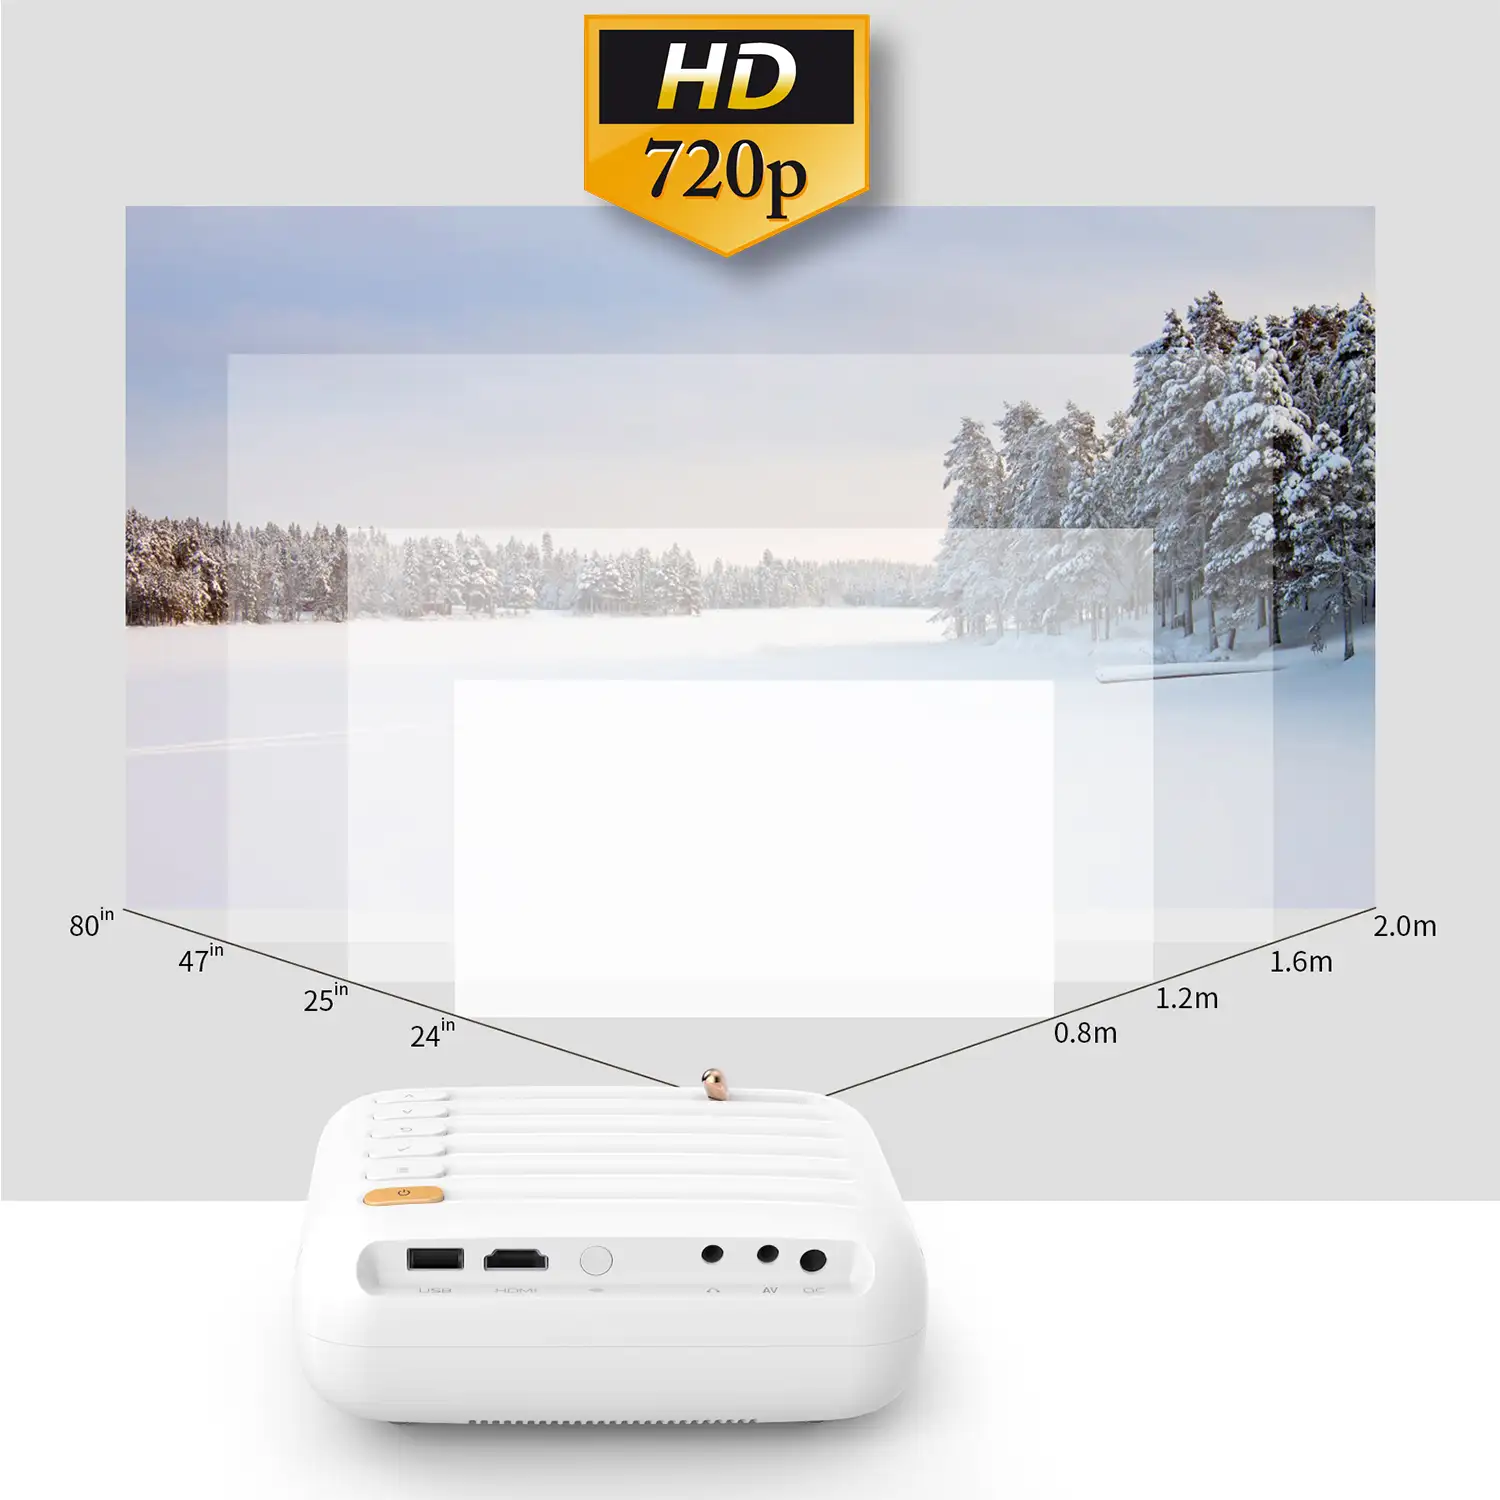 Proyector B1 Wifi LCD, HD720P, duplicación de pantalla para iOS y Android. USB/HDMI/AV. De 32 a 176 pulgadas, 3000lm. Con mando a distancia.